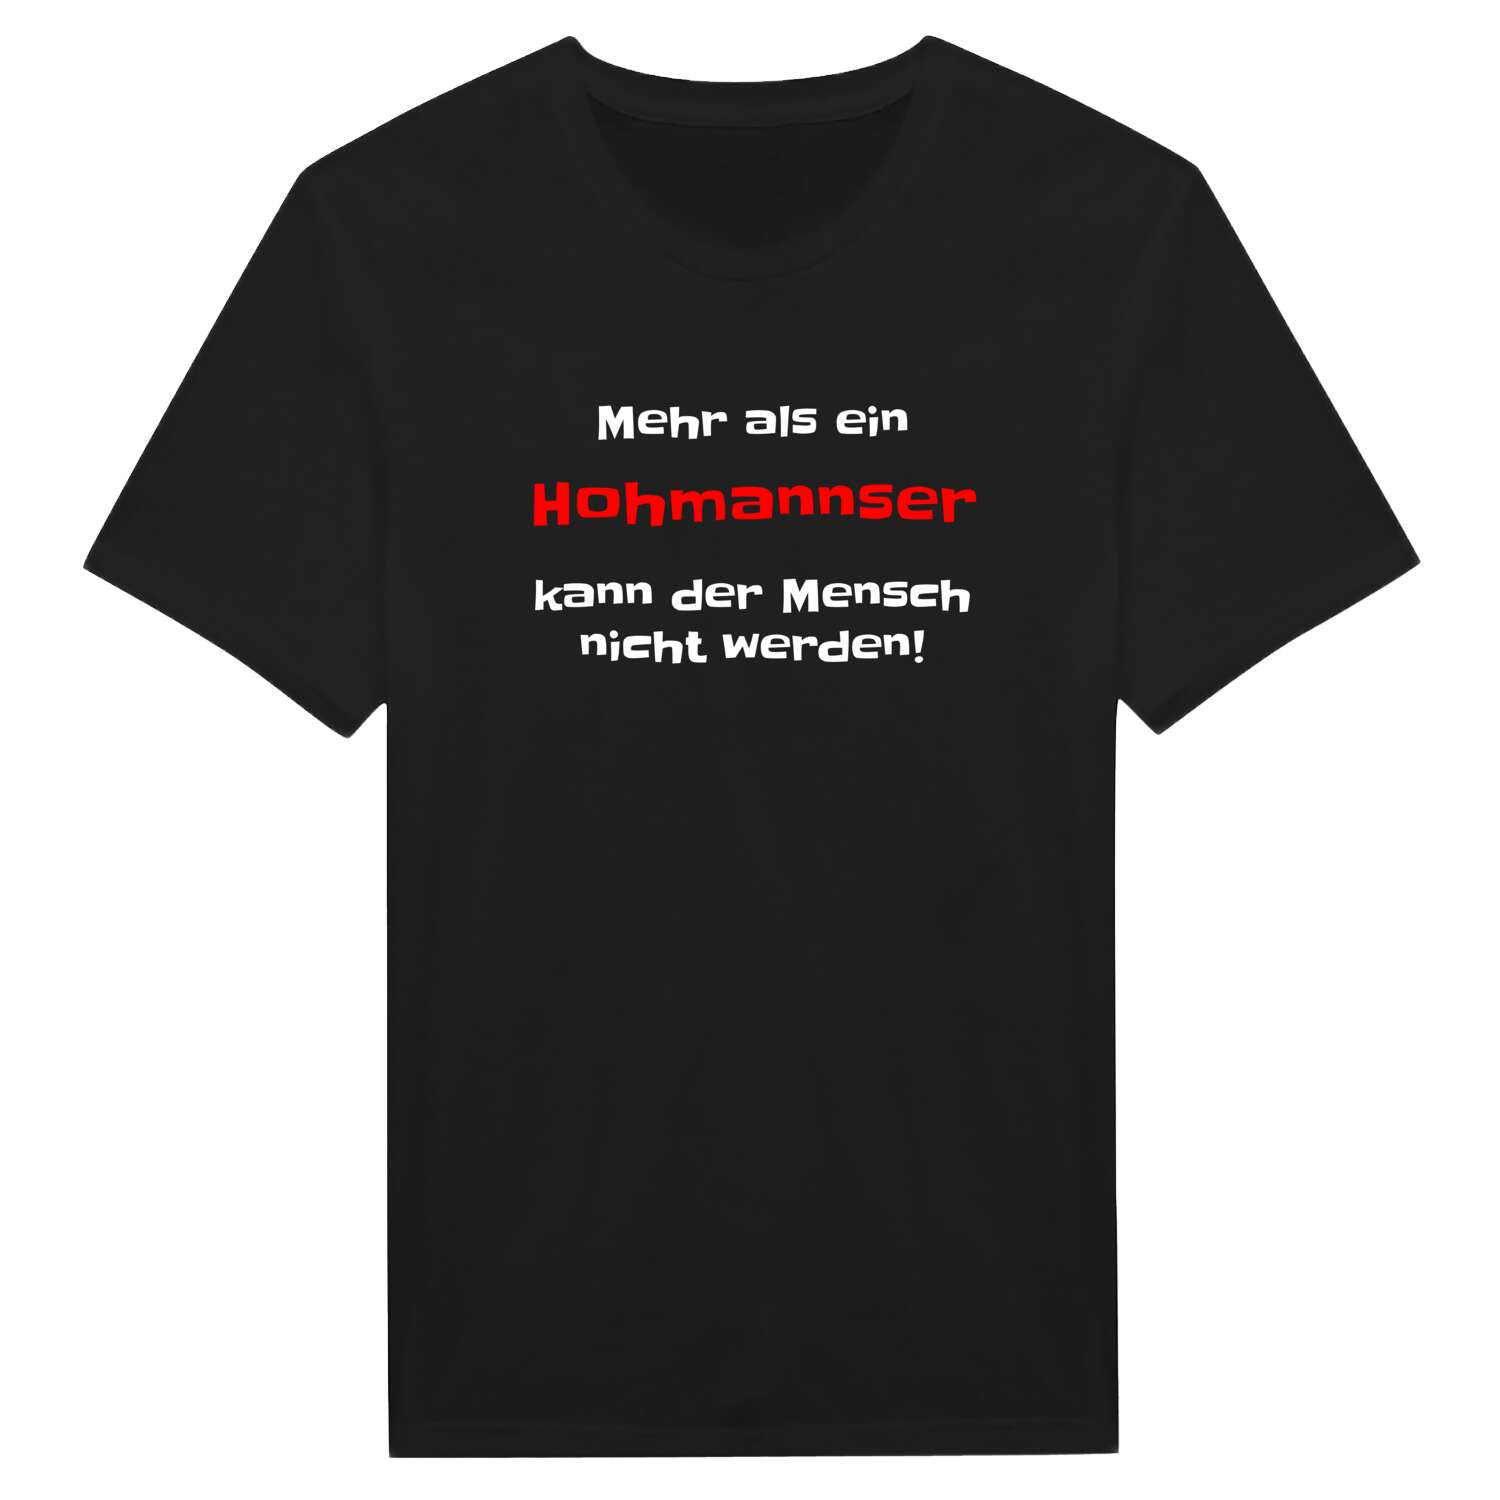 Hohmanns T-Shirt »Mehr als ein«